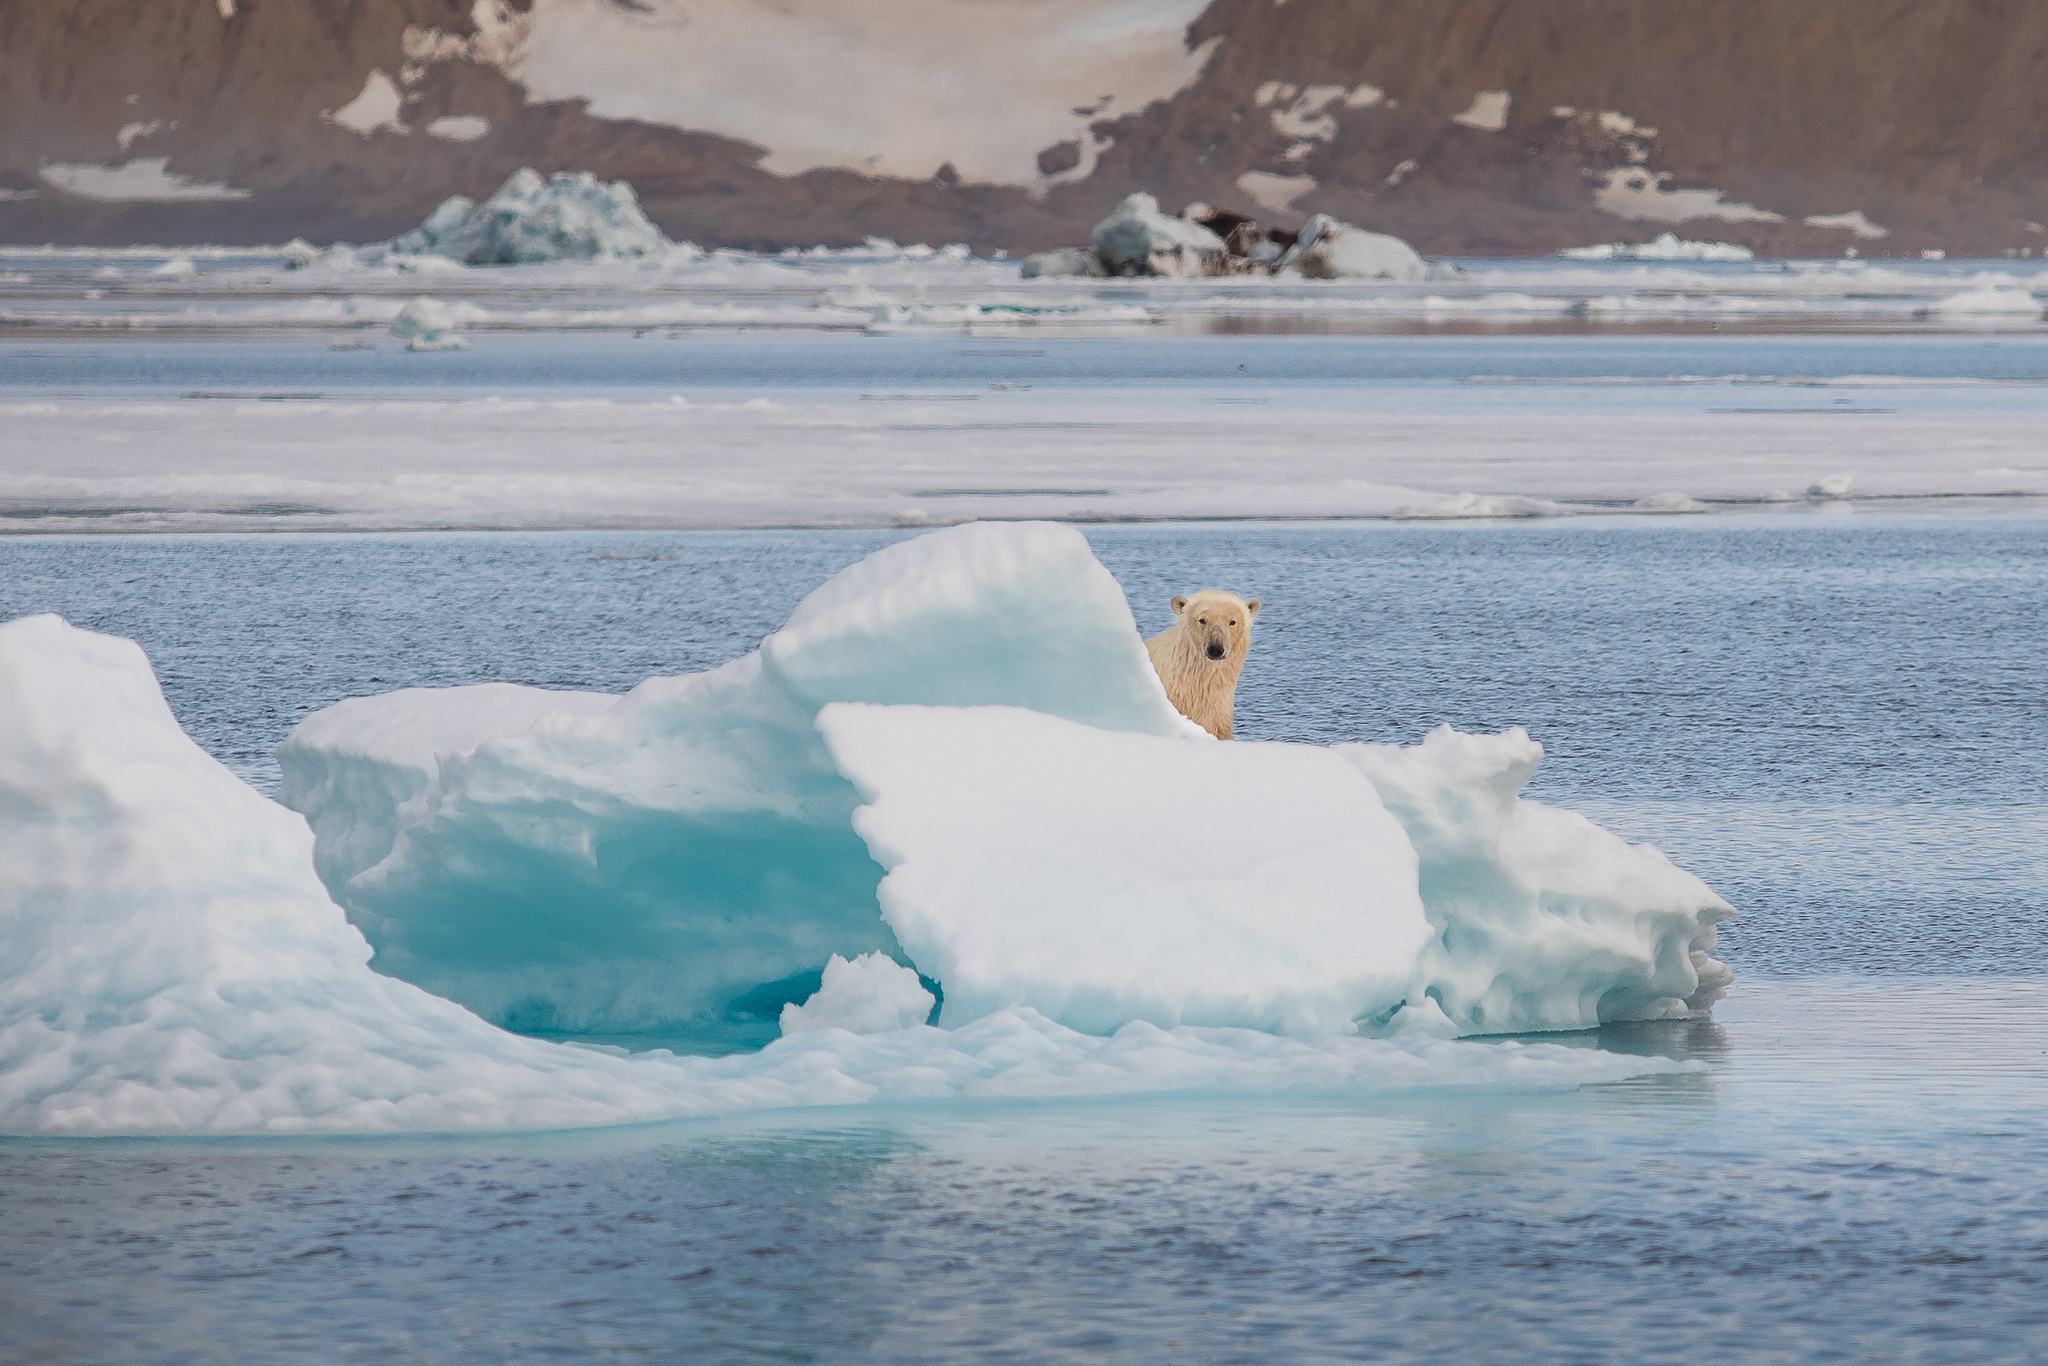 Bilde av en stor isbjørn på avstand som kikker inn i kamera. Isbjørnen titter frem bak is og snø.